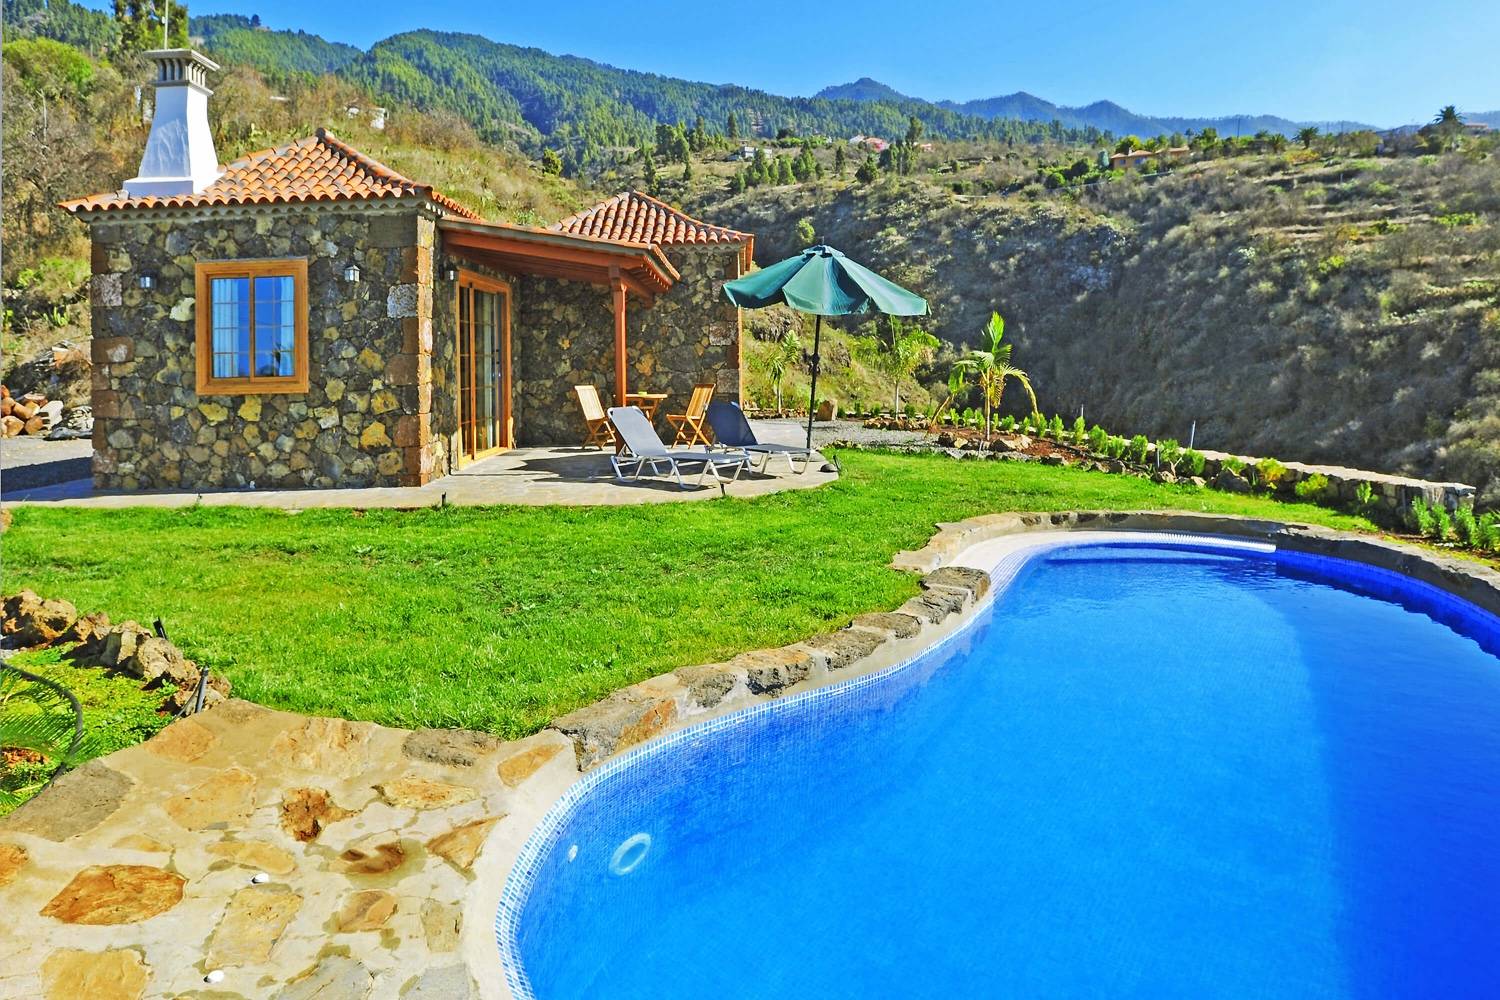 Bonita casa rural de piedra amueblada con materiales de alta calidad, con piscina privada con sistema de cloración salina y buena ubicación con hermosas vistas a las montañas y el mar